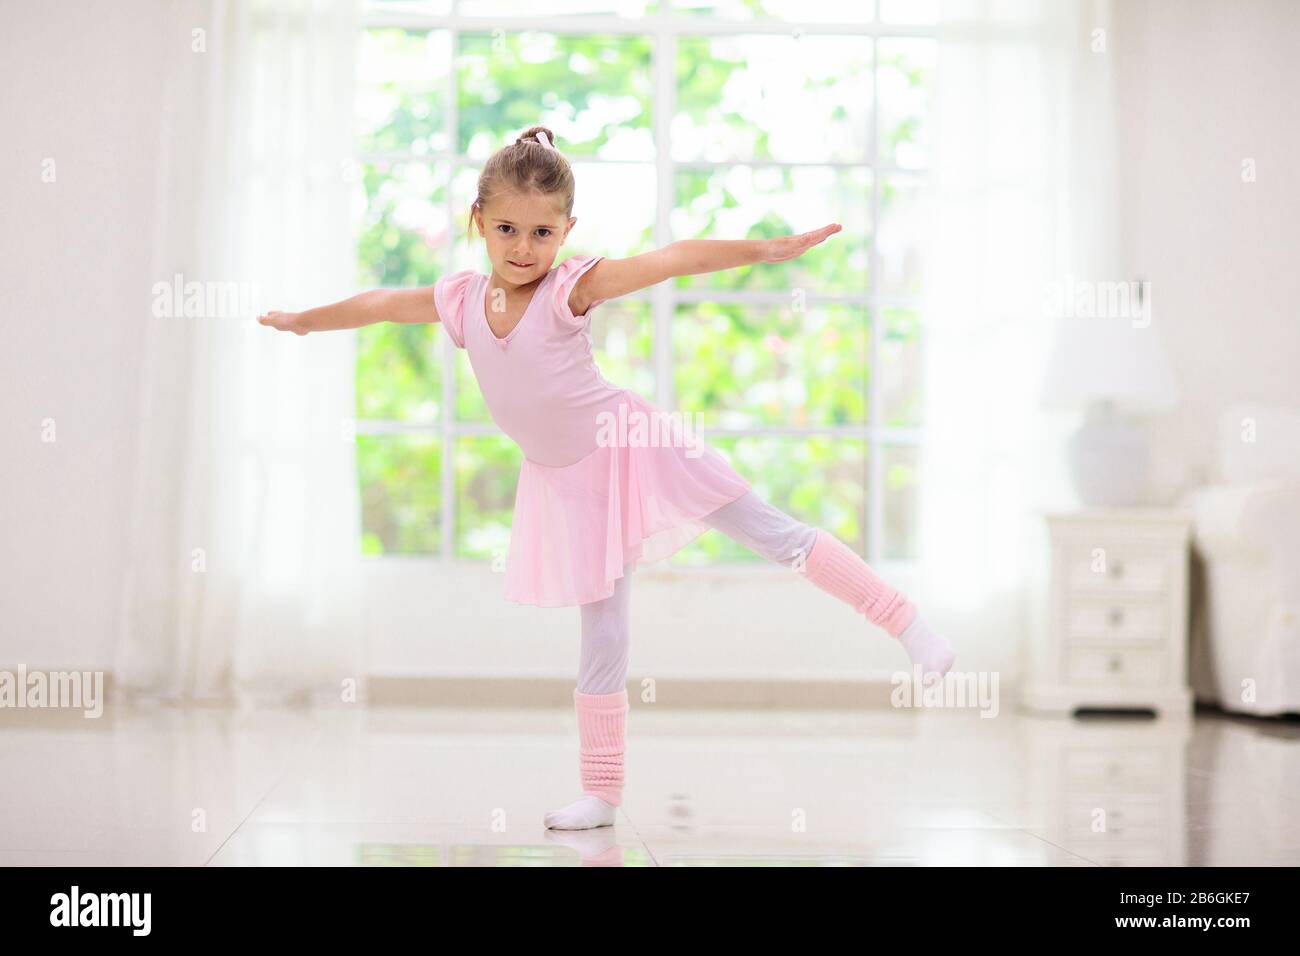 Niña En La Posición De Ballet Pequeña Bailarina En Tutú Azul Lección De  Danza Adorable De La Toma De La Muchacha De La Bailarina Foto de archivo -  Imagen de bailando, ejecutante